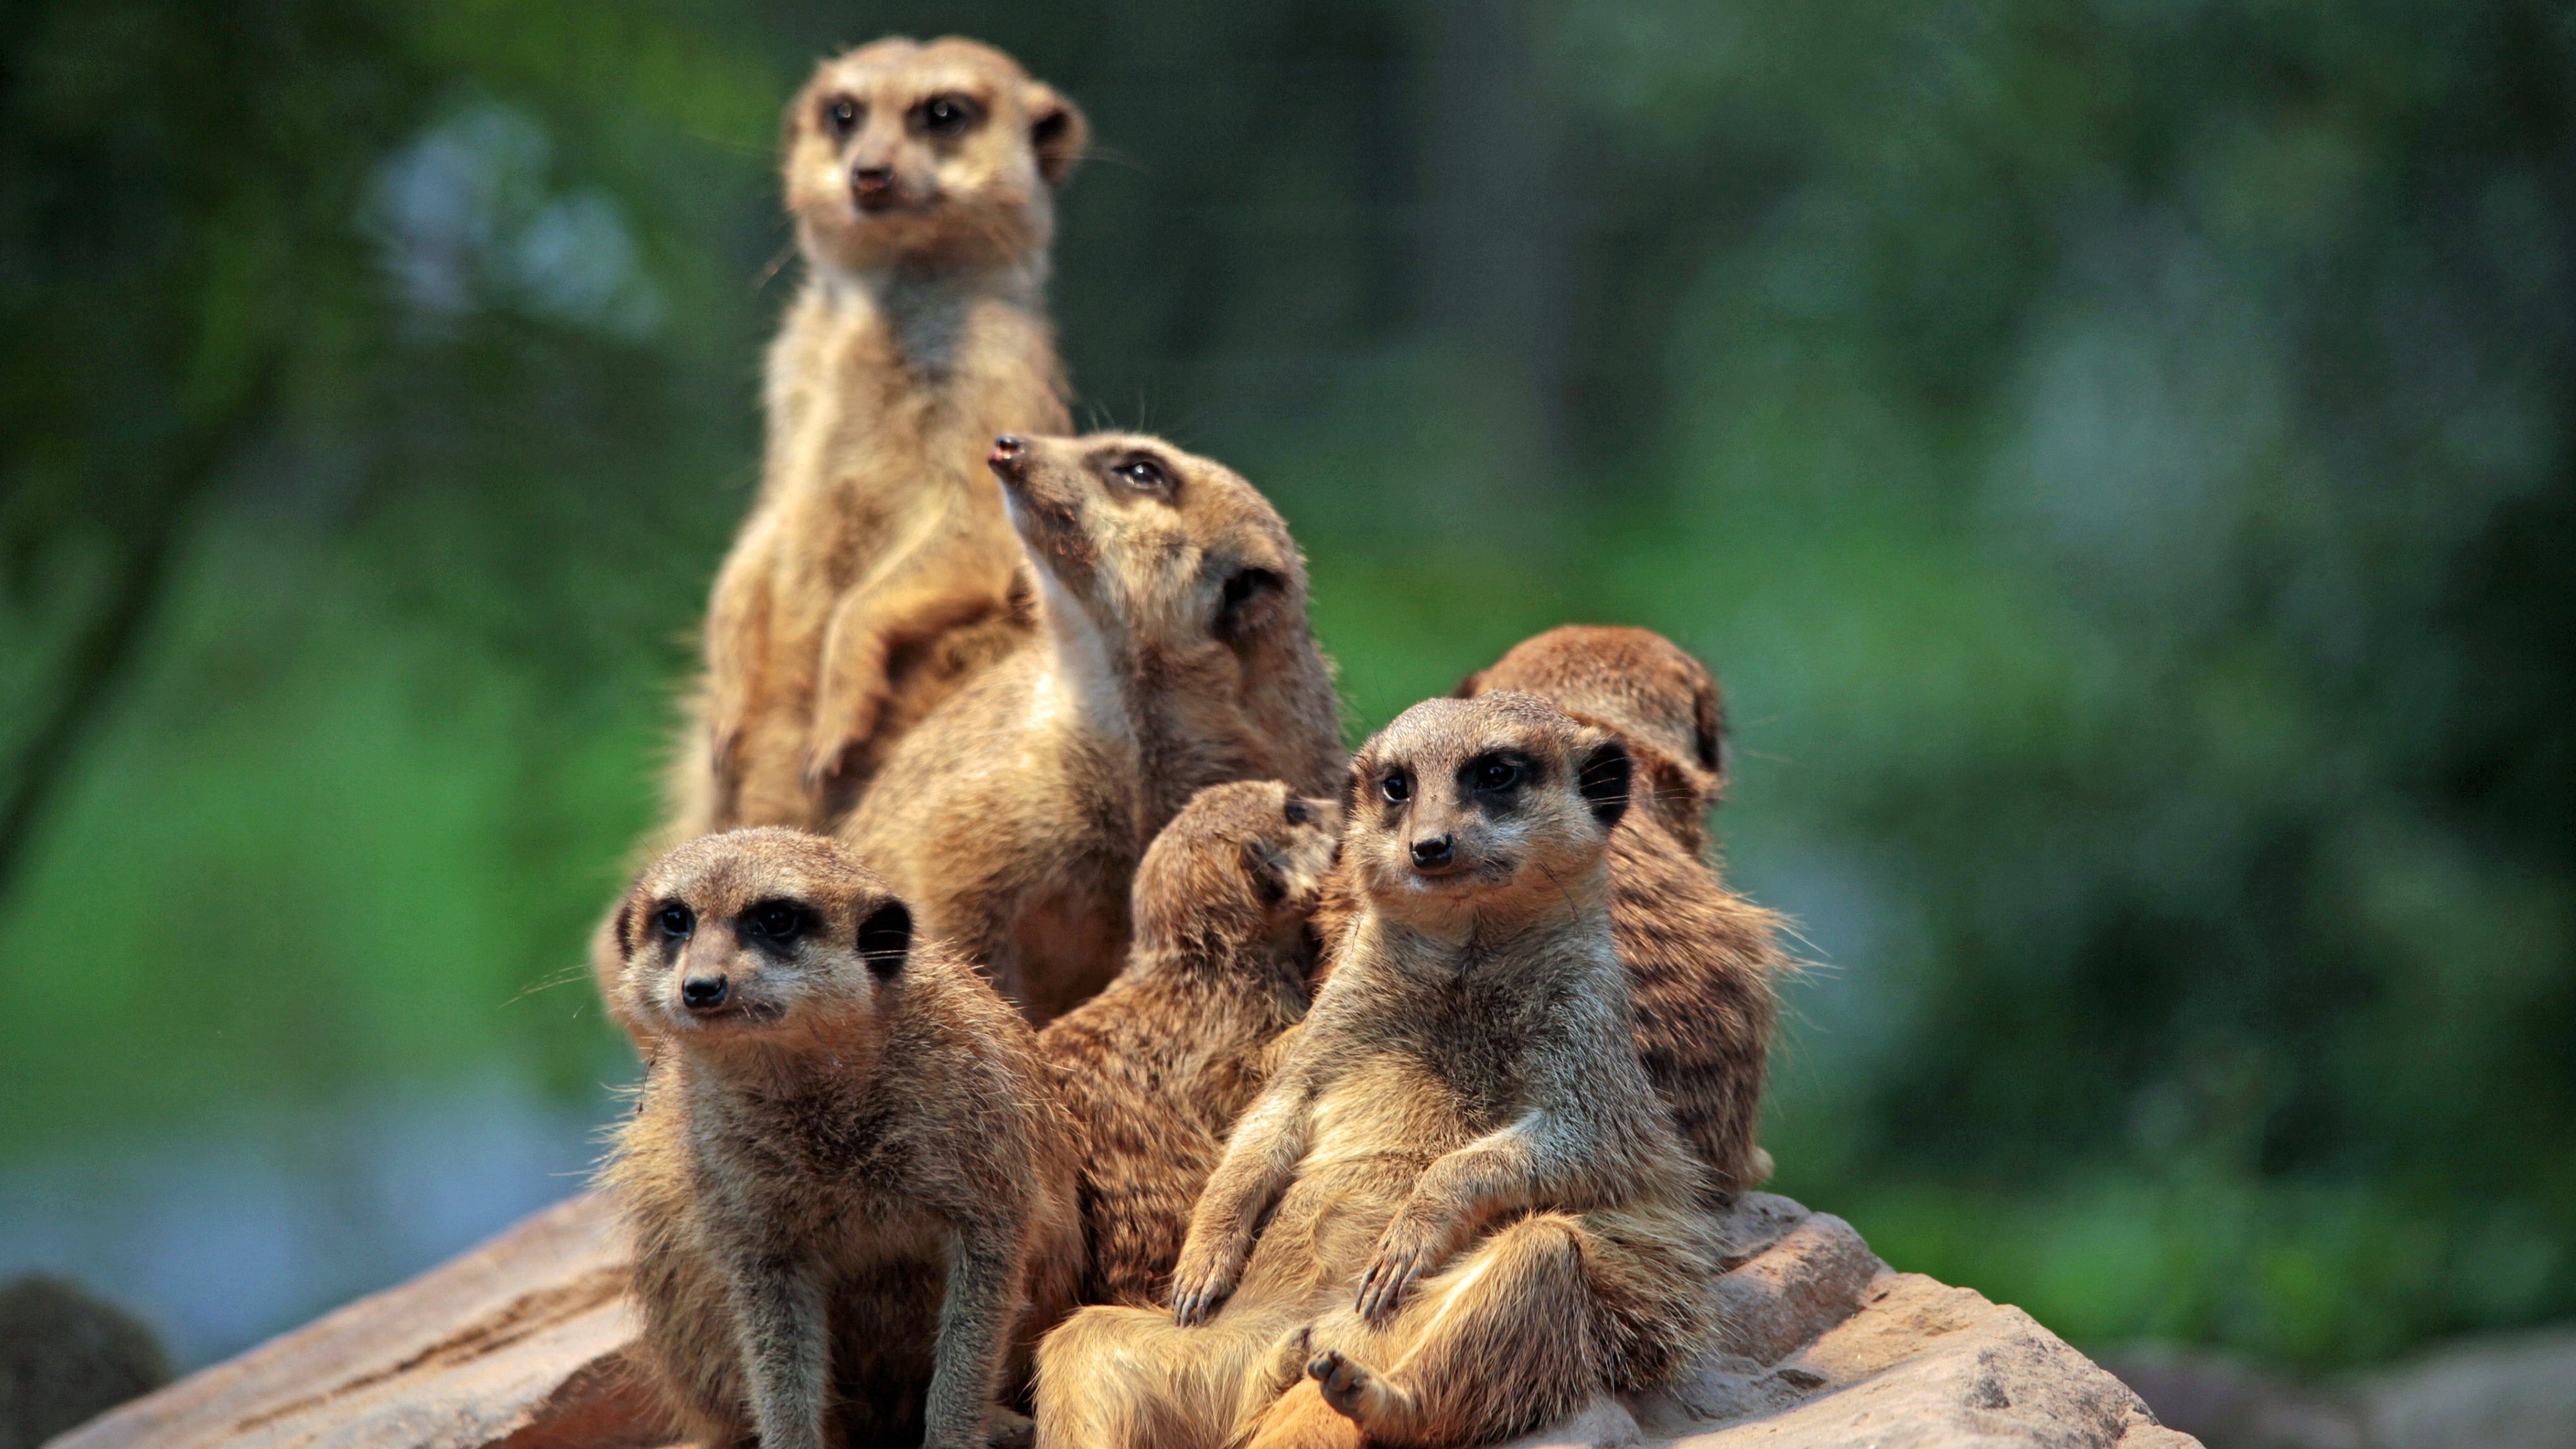 Meerkat family, Zoo wildlife, HD wallpapers, Android background, 3840x2160 4K Desktop